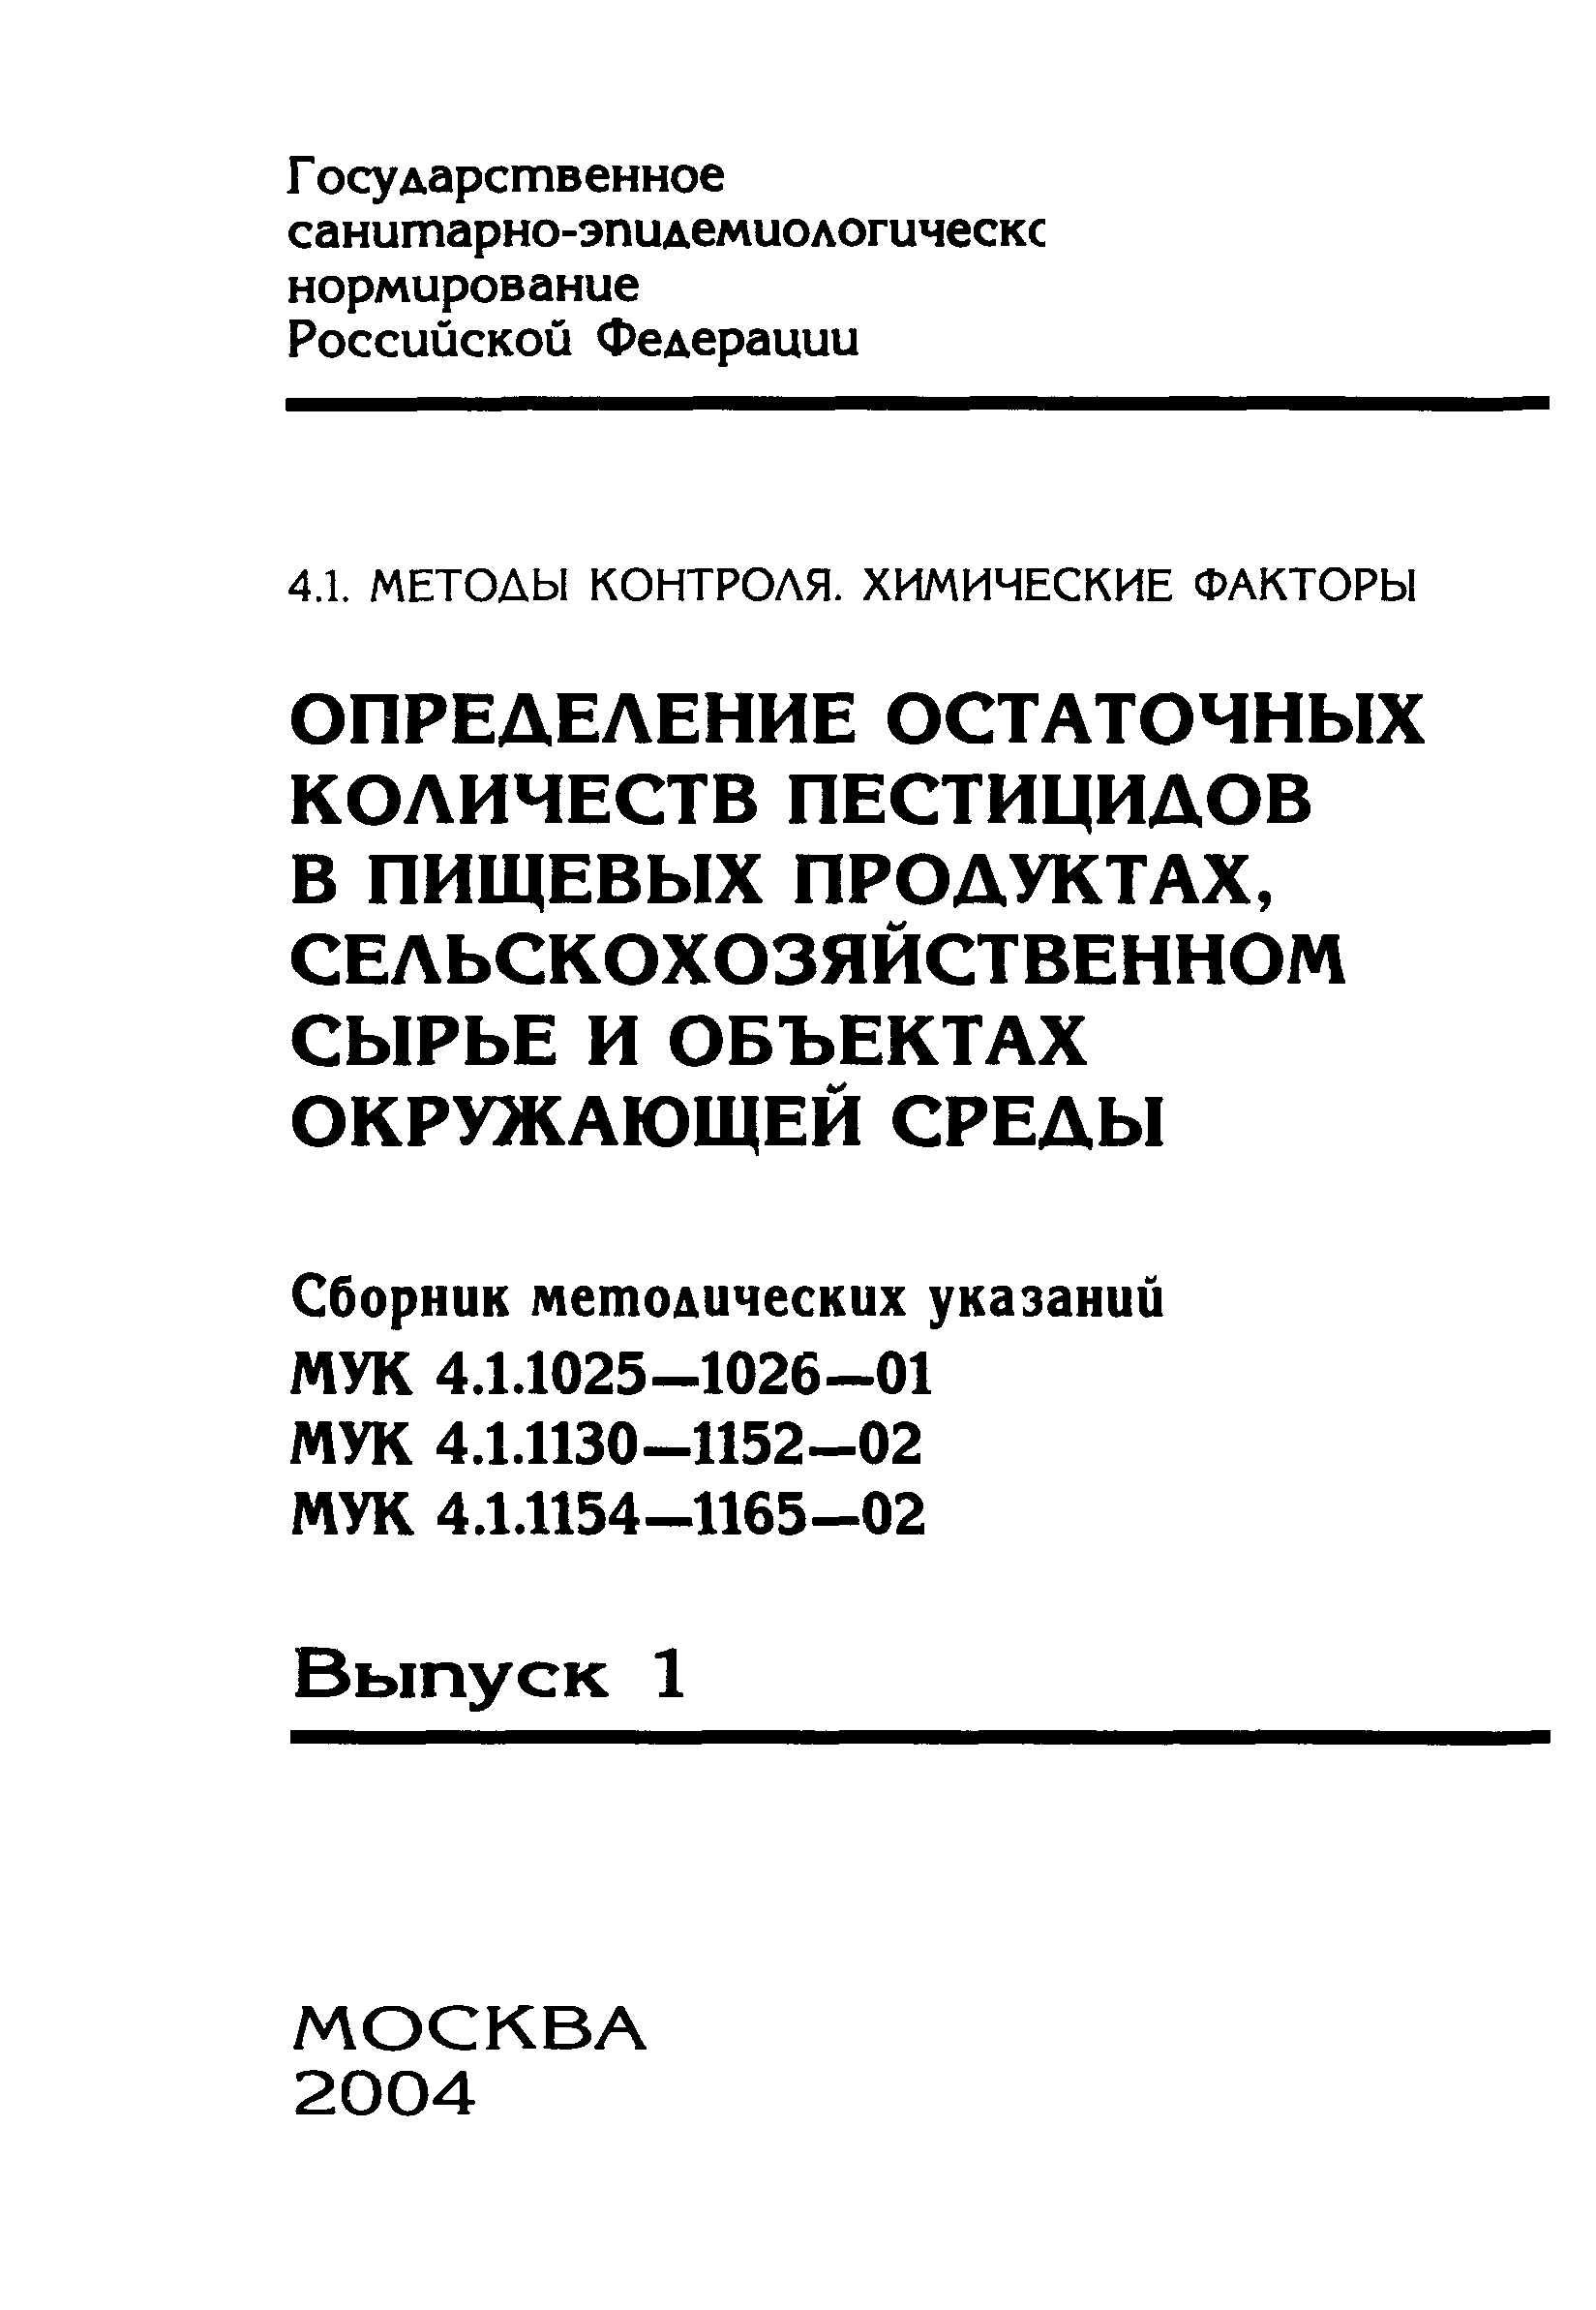 МУК 4.1.1132-02